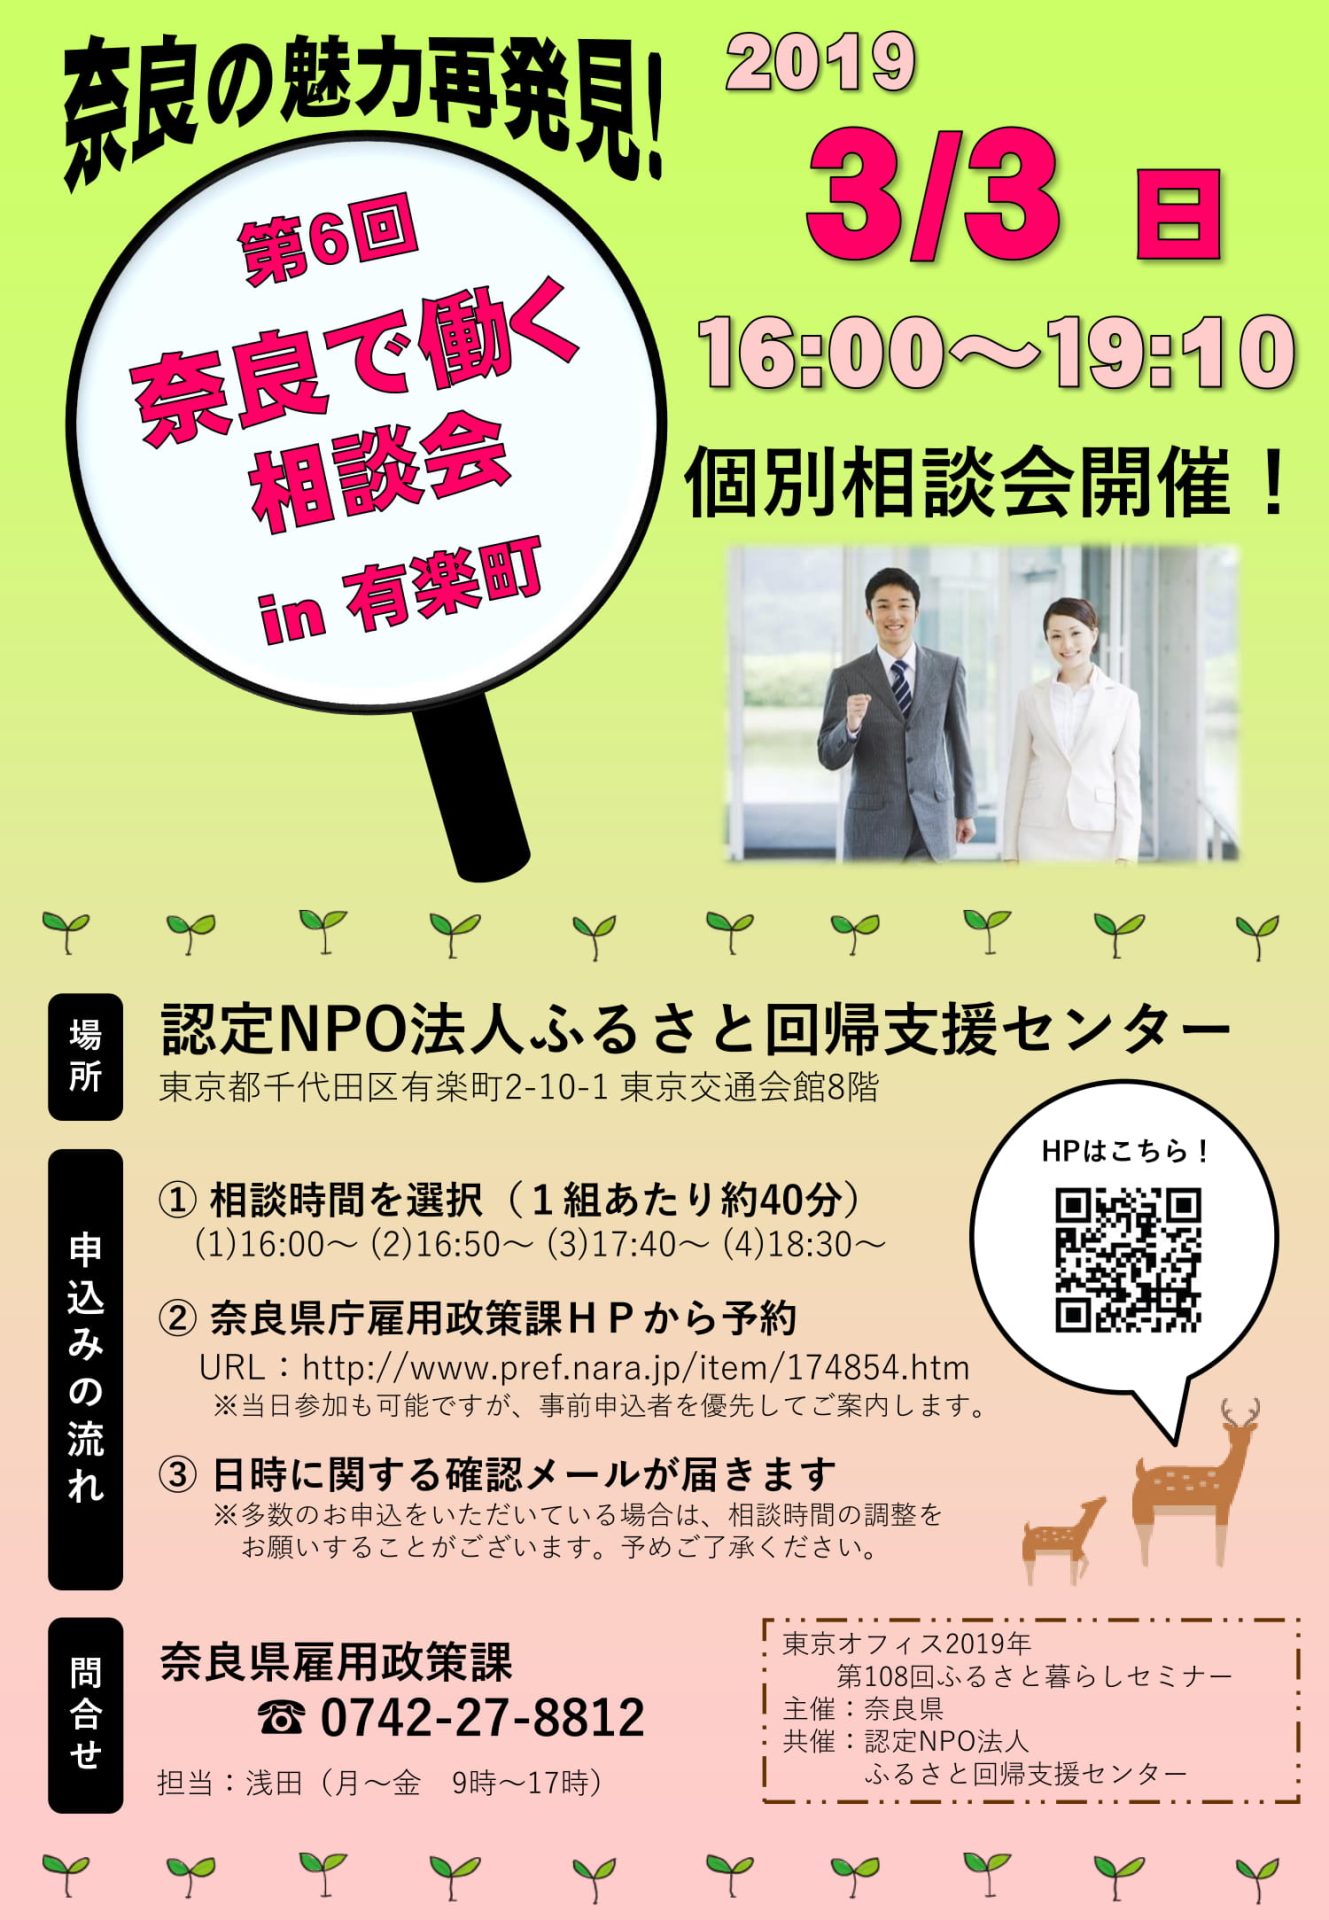 第6回 奈良で働く相談会in有楽町 | 移住関連イベント情報